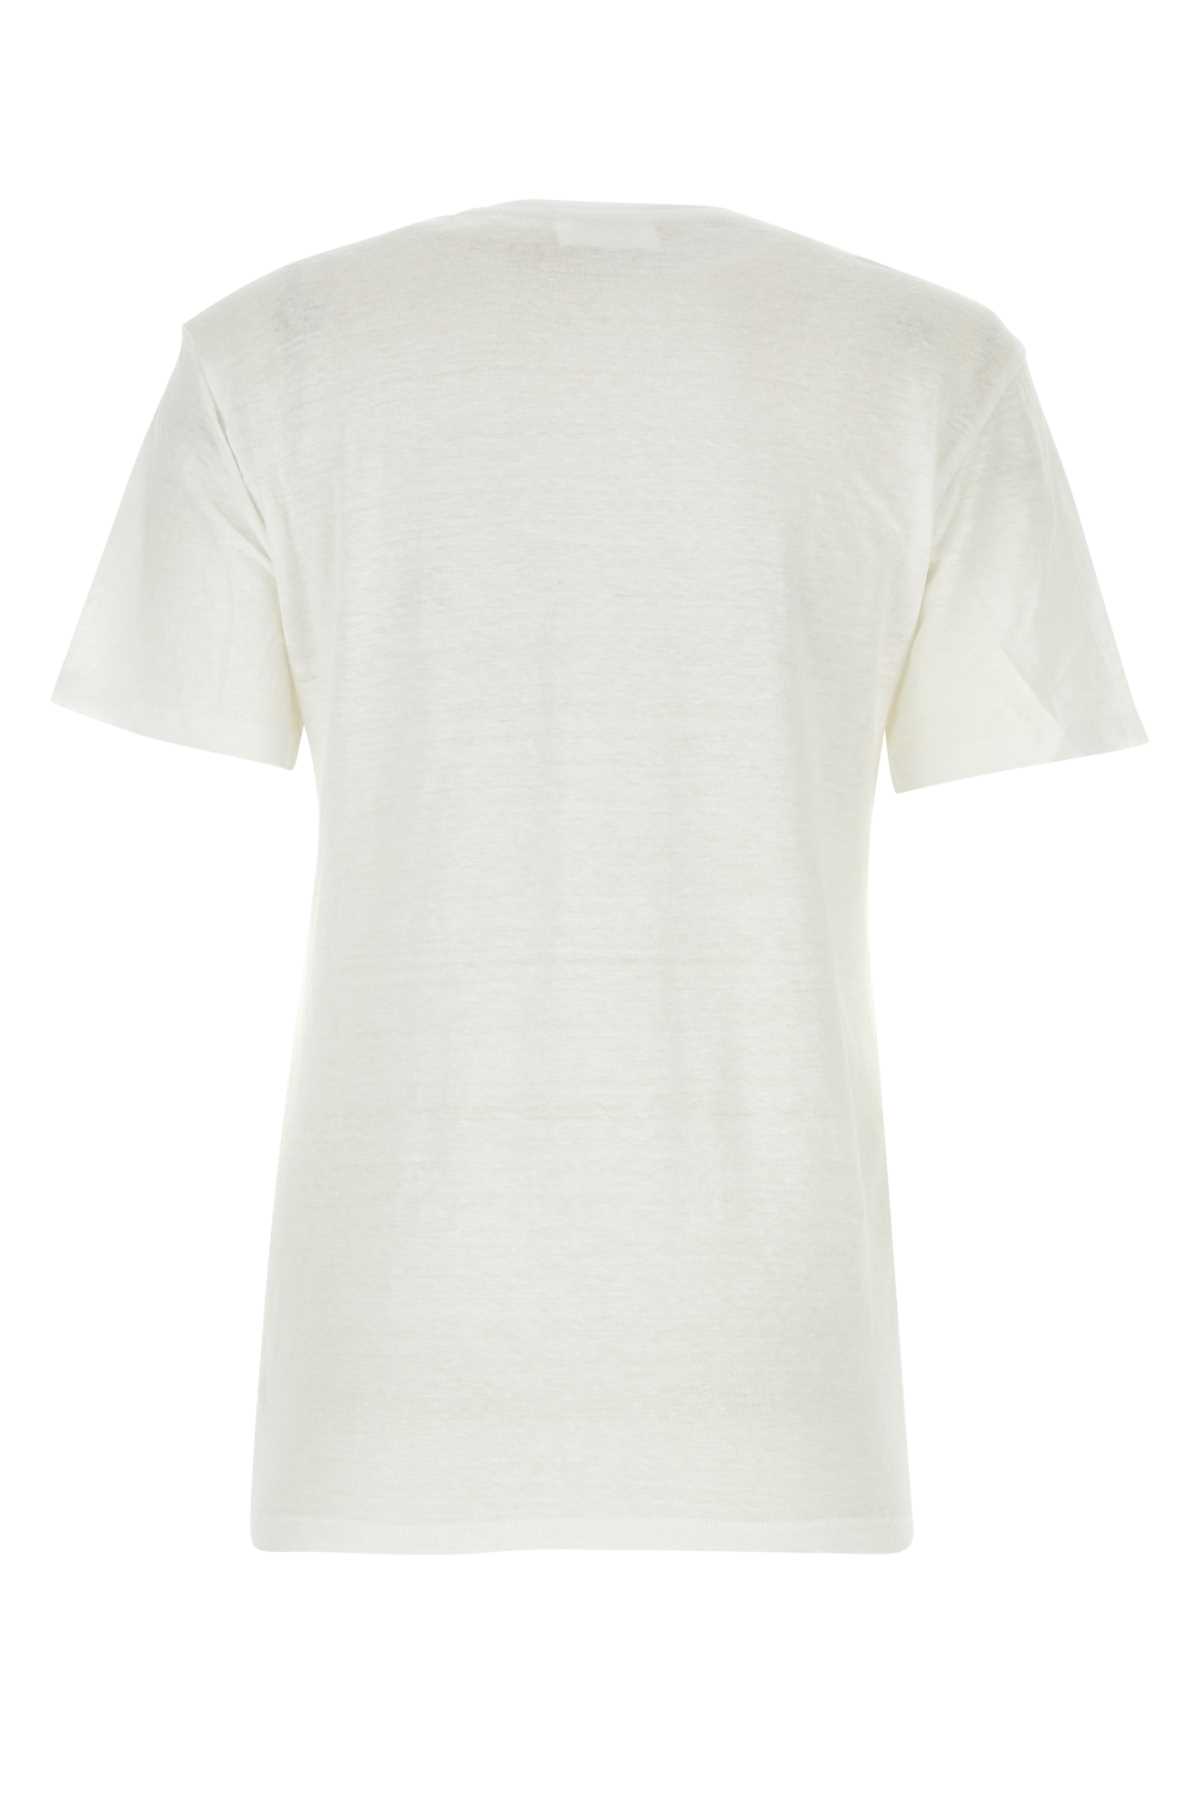 Marant Etoile White Linen Zewel T-shirt